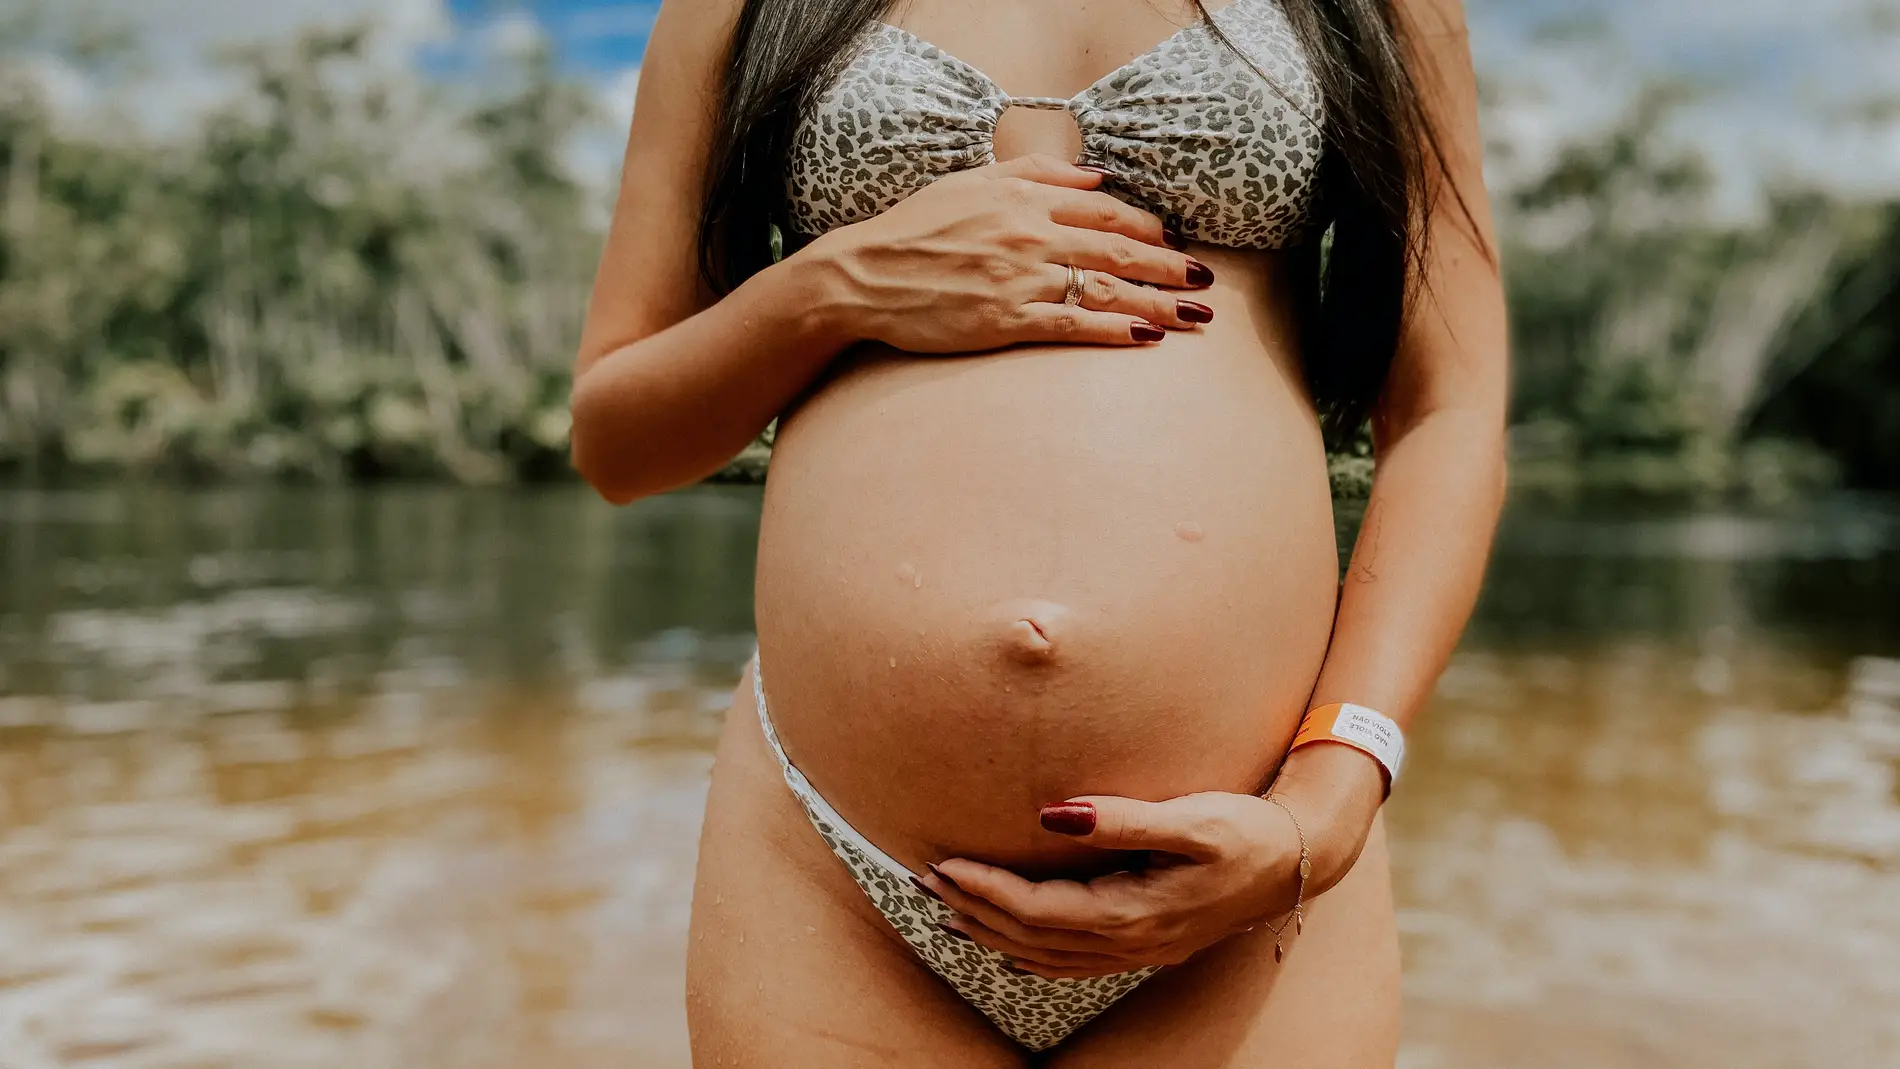 Mujer embarazada en biquini